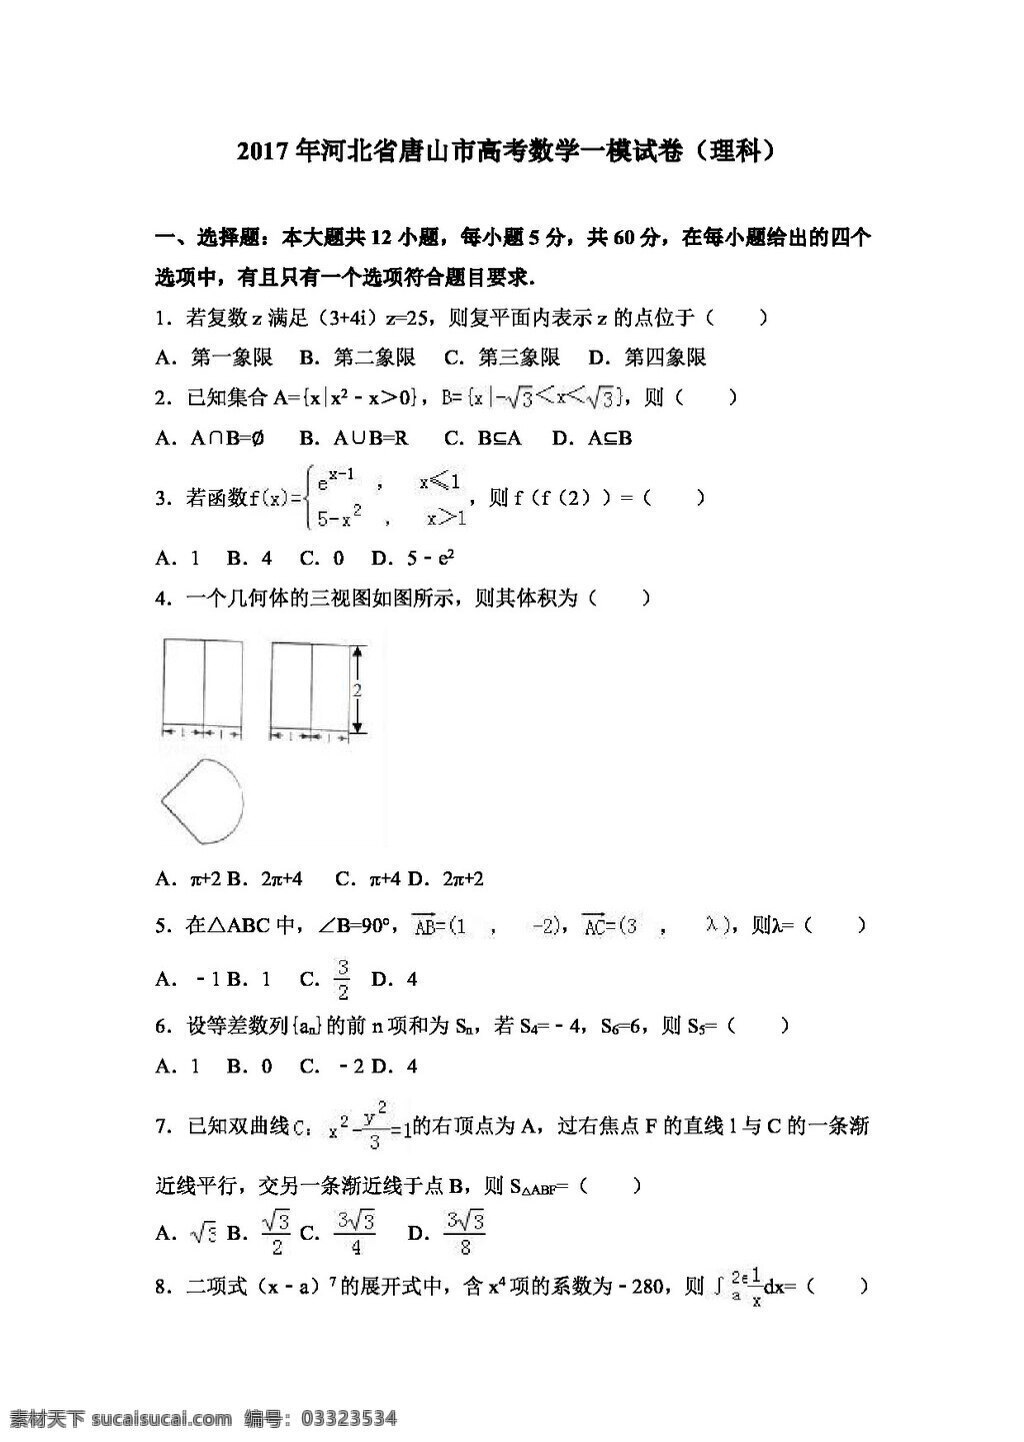 数学 人教 版 2017 年 河北省 唐山市 高考 模 试卷 理科 高考专区 人教版